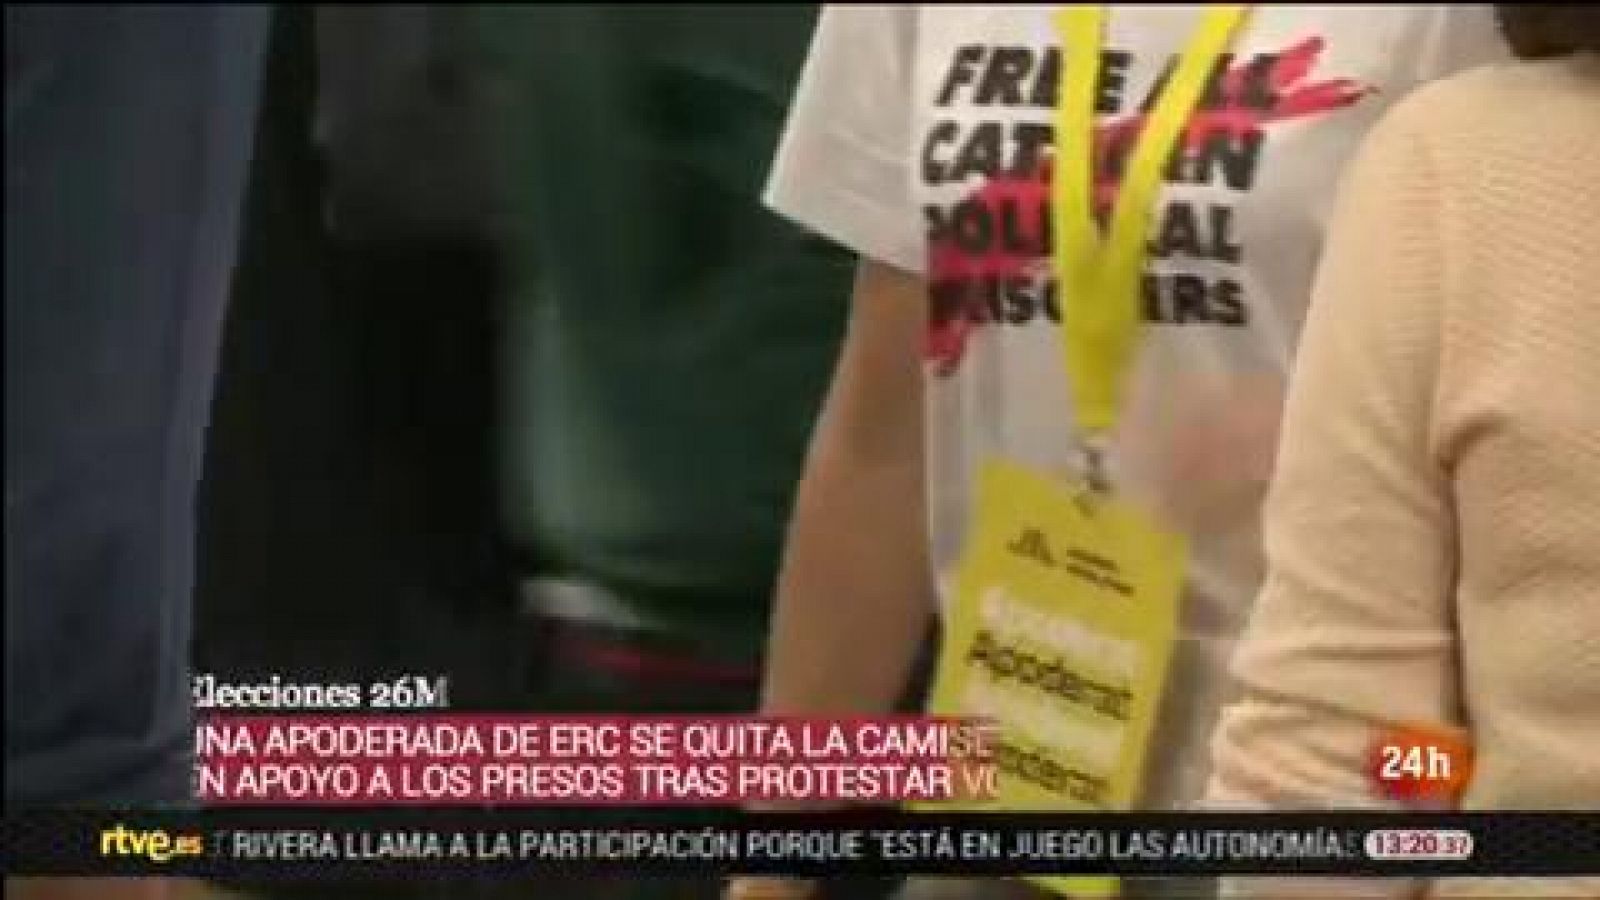 Elecciones 26M: Una apoderada de ERC se quita una camiseta a favor de los presos independentistas tras una discusión con un representante de Vox